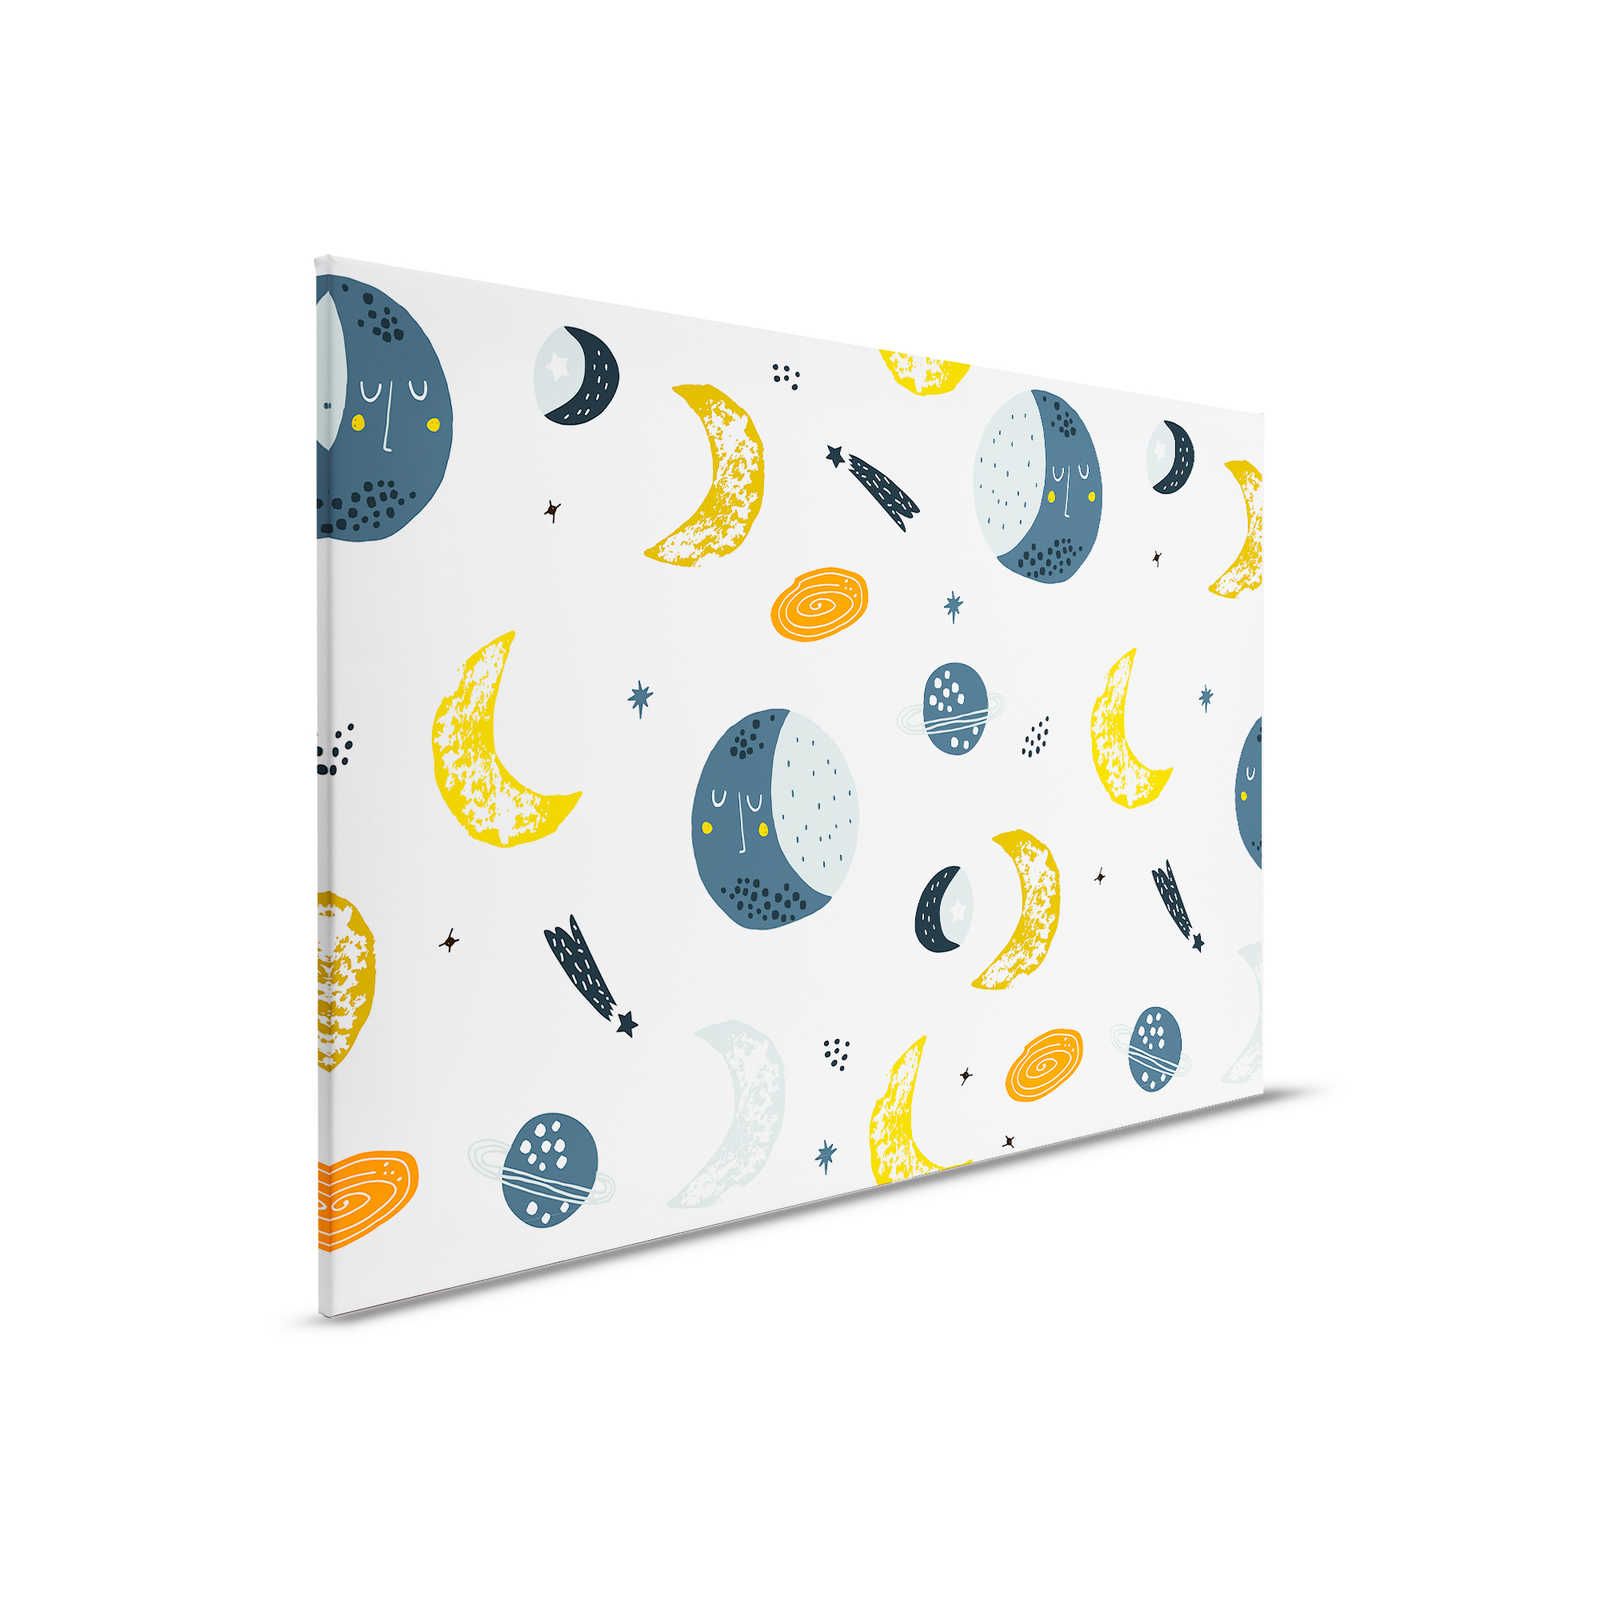         Leinwand mit Monden und Sternschnuppen – 90 cm x 60 cm
    